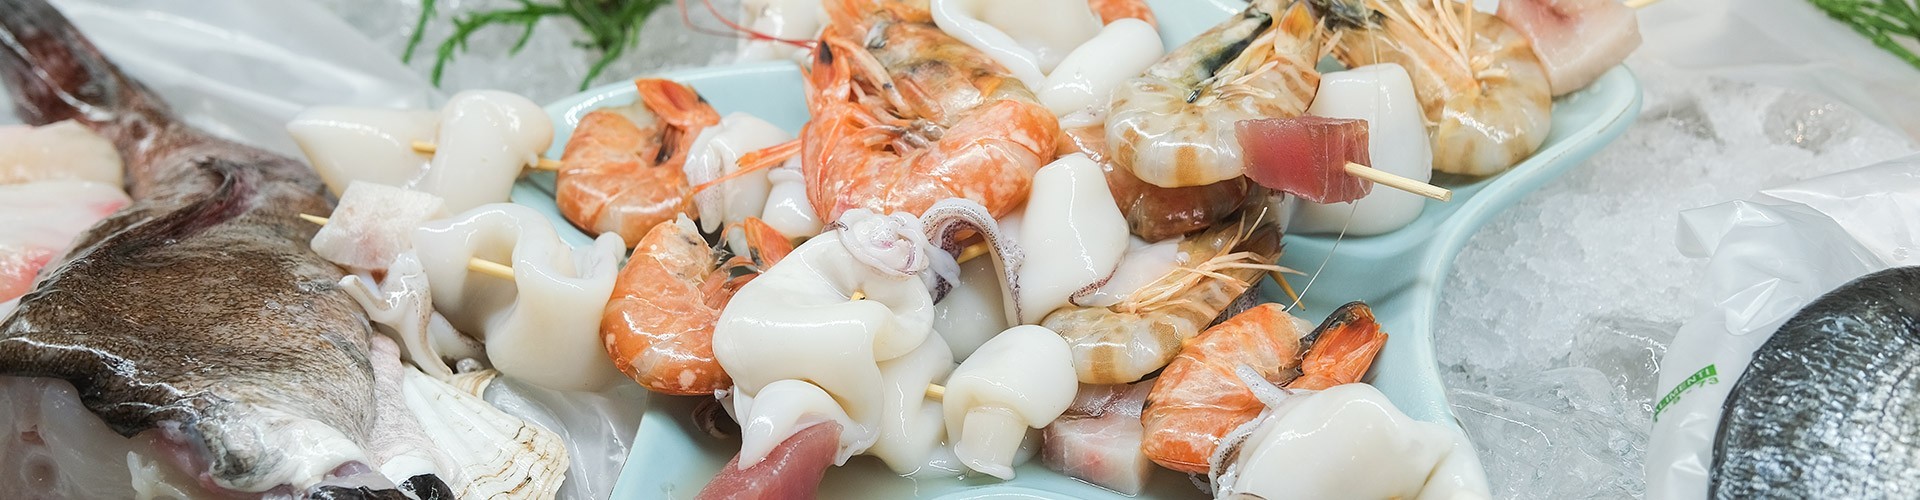 vendita crostacei merluzzo ostriche rane e pescato Mediterraneo